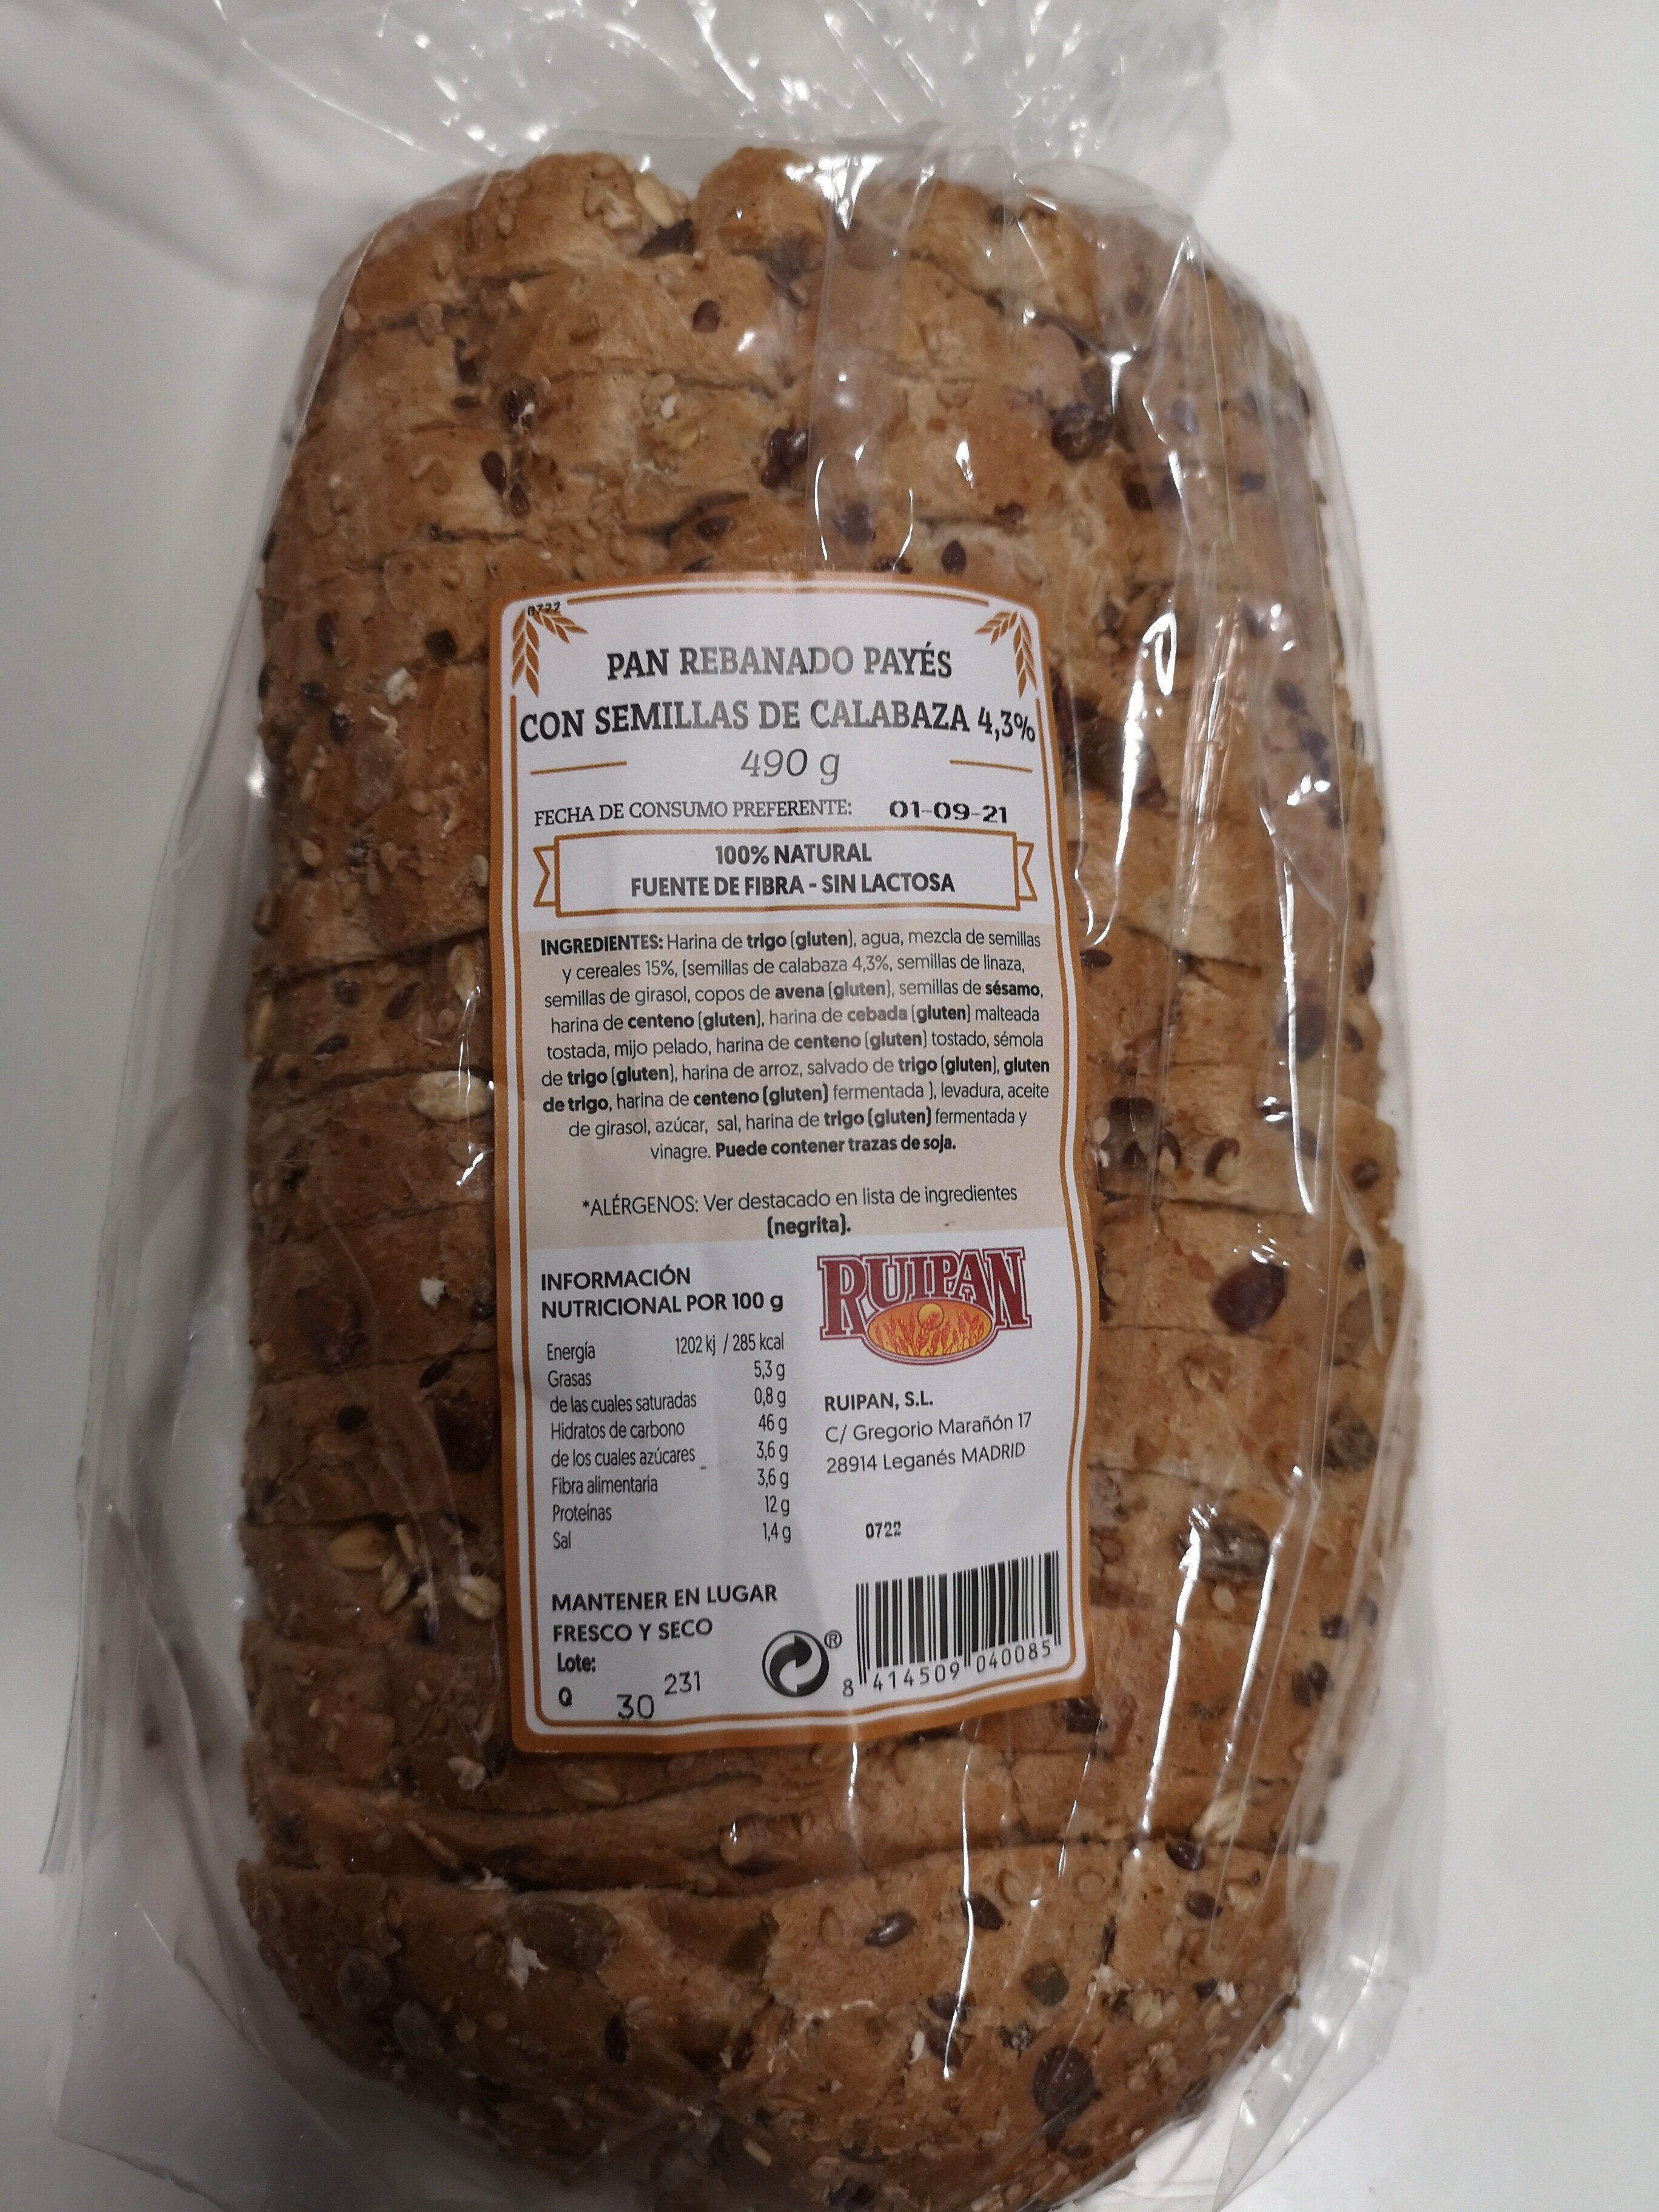 Pan rebanado payés con semillas de calabaza - Producte - es